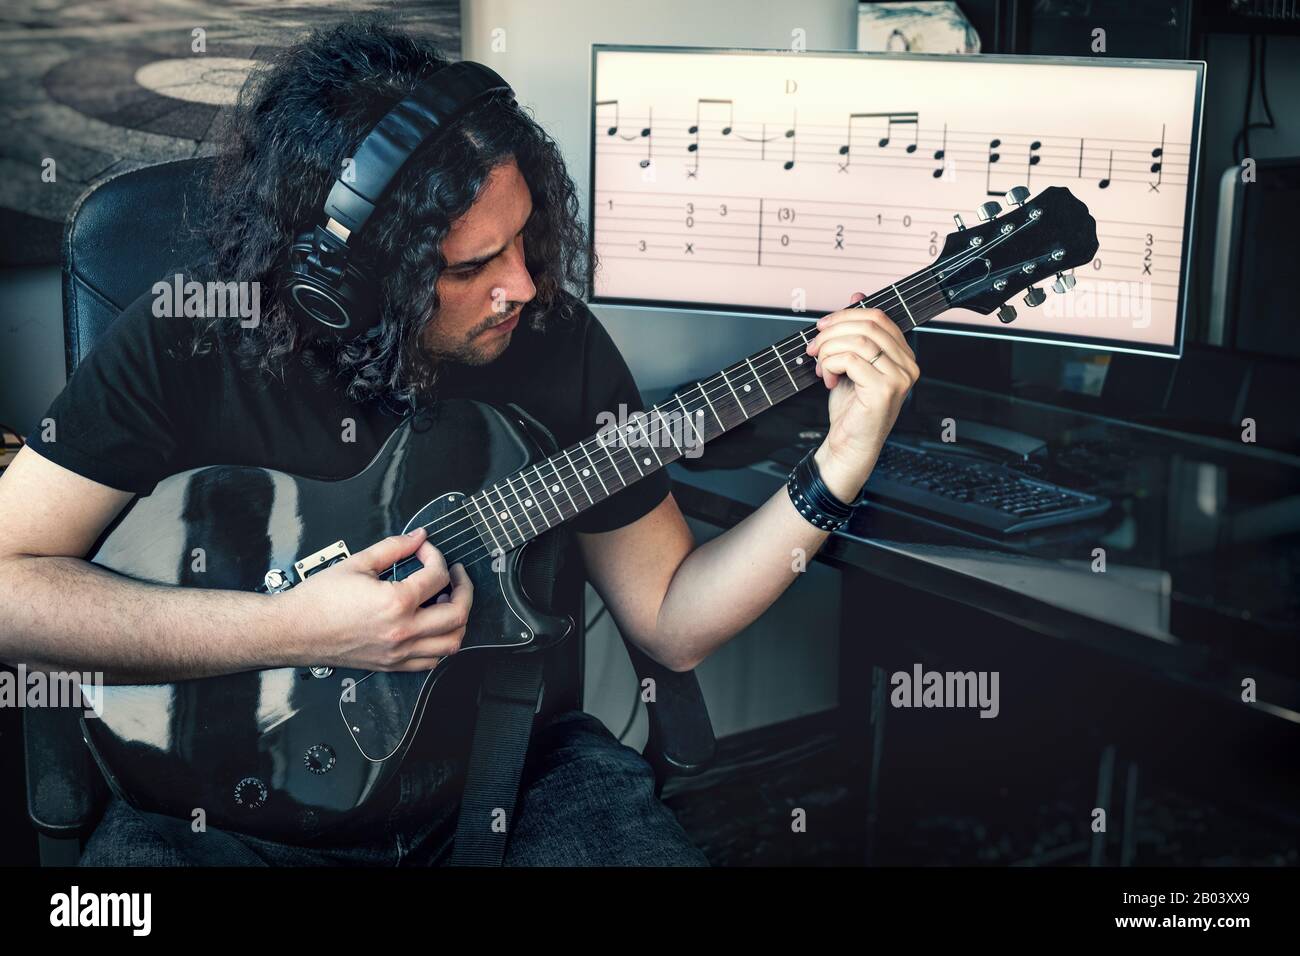 il compositore rock dai capelli lunghi, uomo con cuffie, suona la chitarra elettrica con un punteggio musicale sullo sfondo dello schermo Foto Stock